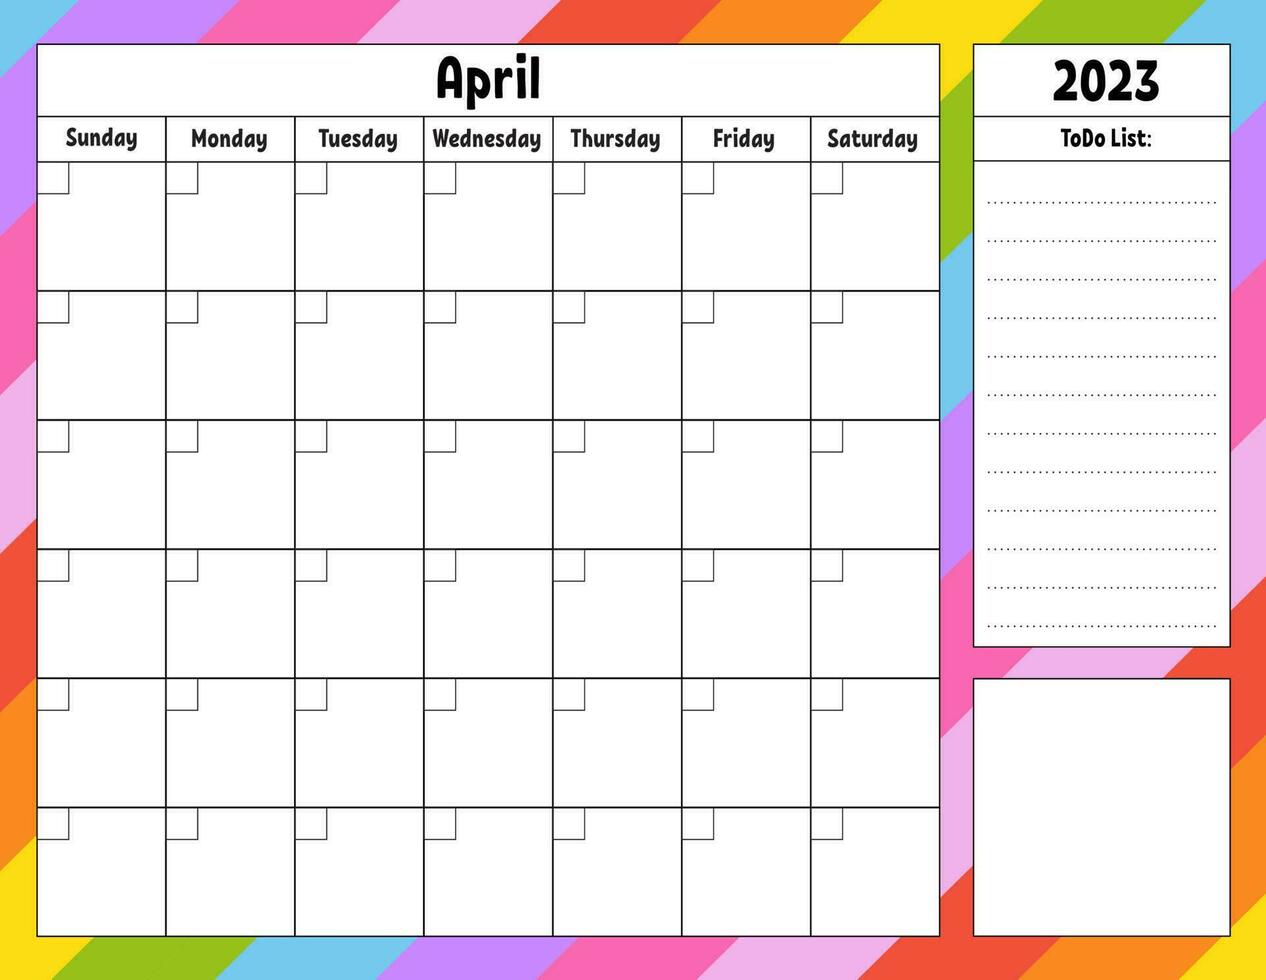 blanco kalender sjabloon voor een maand zonder datums. kleurrijk ontwerp met een schattig karakter. vector illustratie.